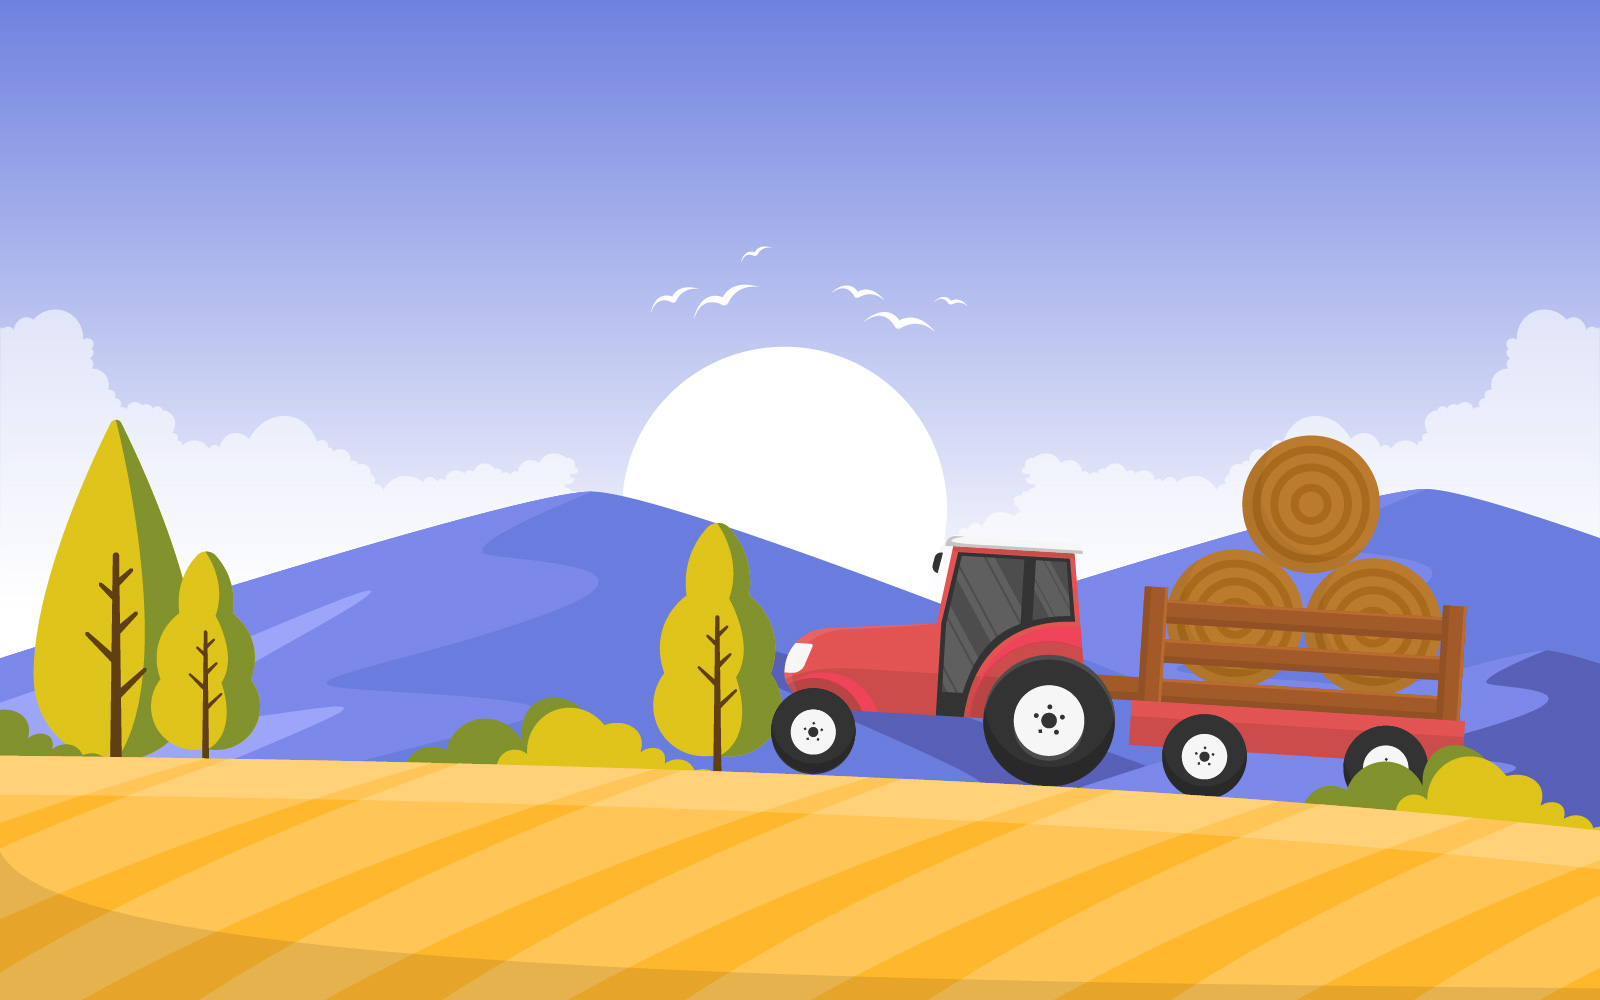 Wheat Field Scene - Illustration